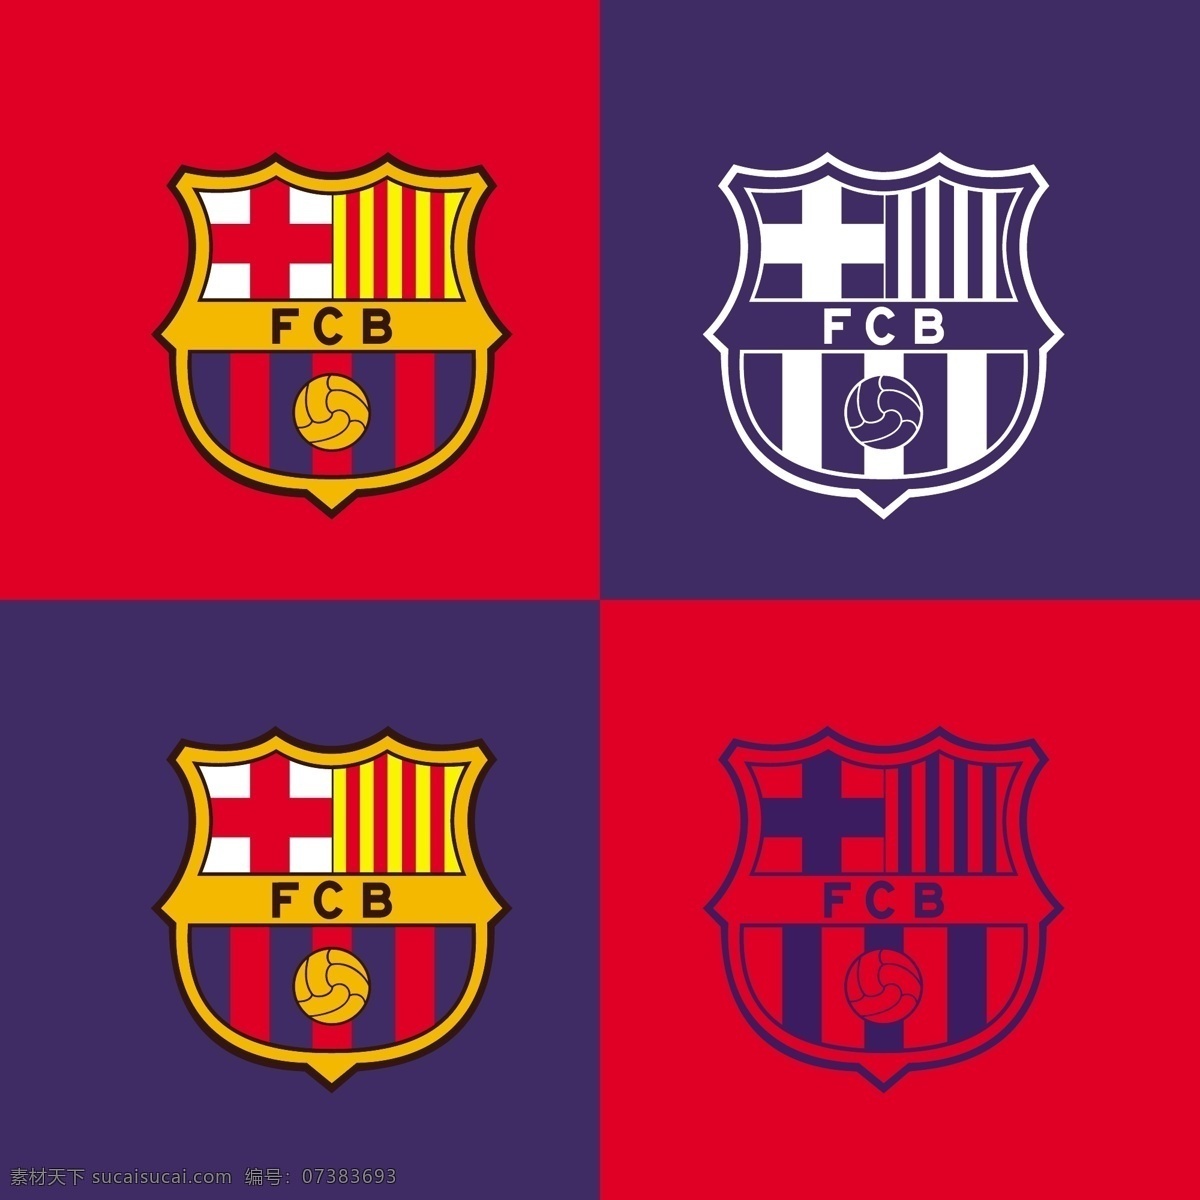 巴塞罗那 足球 标志 巴萨 皇马 西班牙 国家德比 欧冠 梅西 msn 内马尔 世界杯 欧洲超级杯 足球标志 logo设计